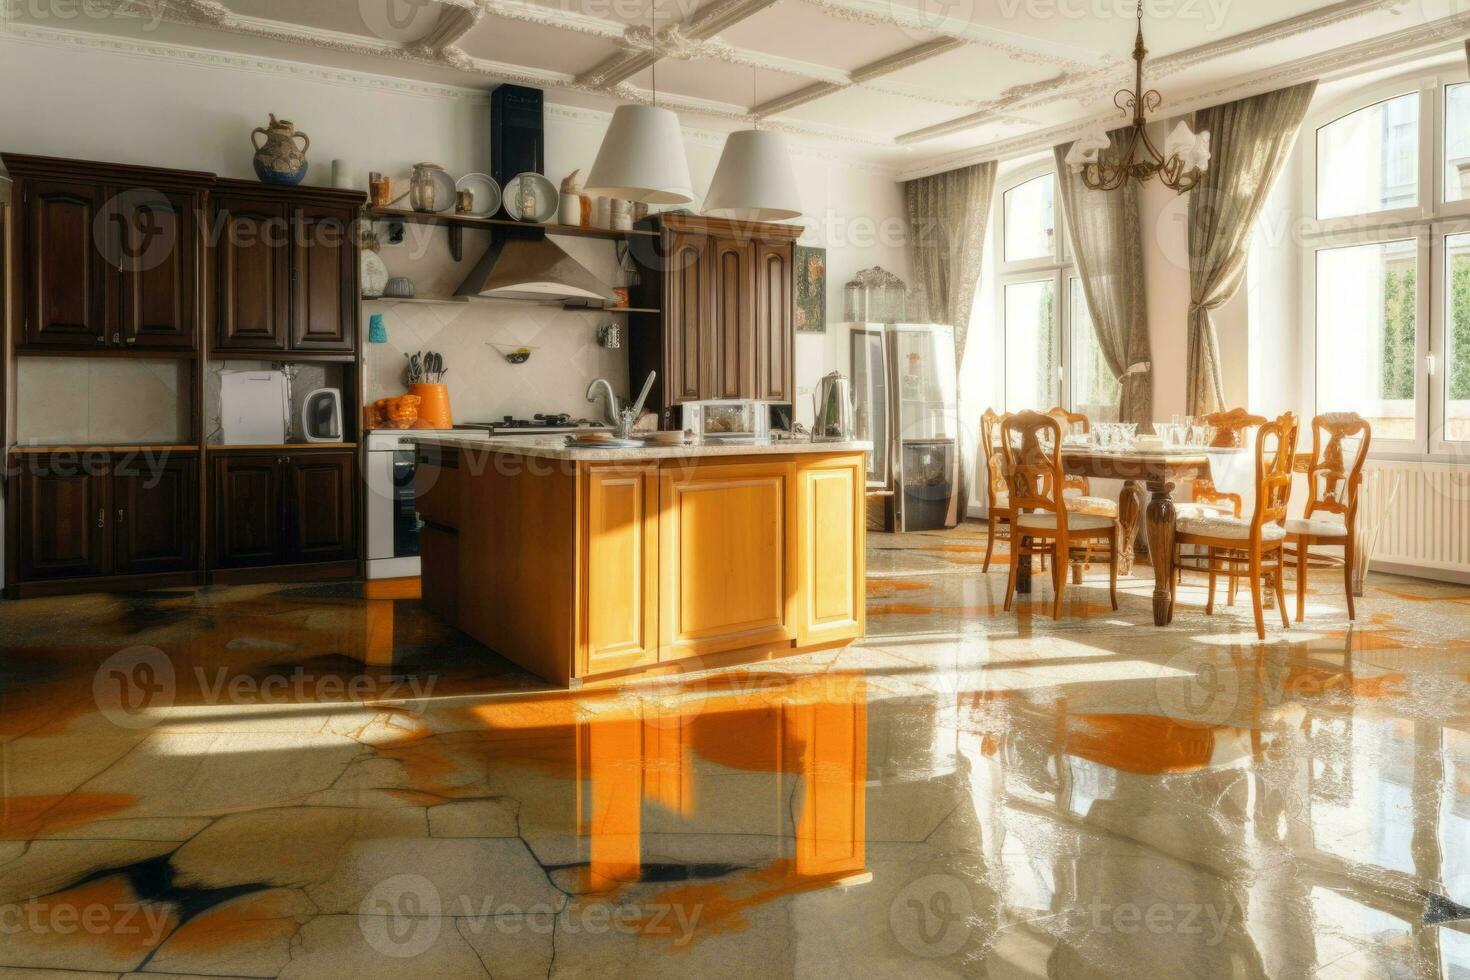 inundado chão dentro cozinha a partir de água vazar. dano. propriedade seguro. generativo ai foto